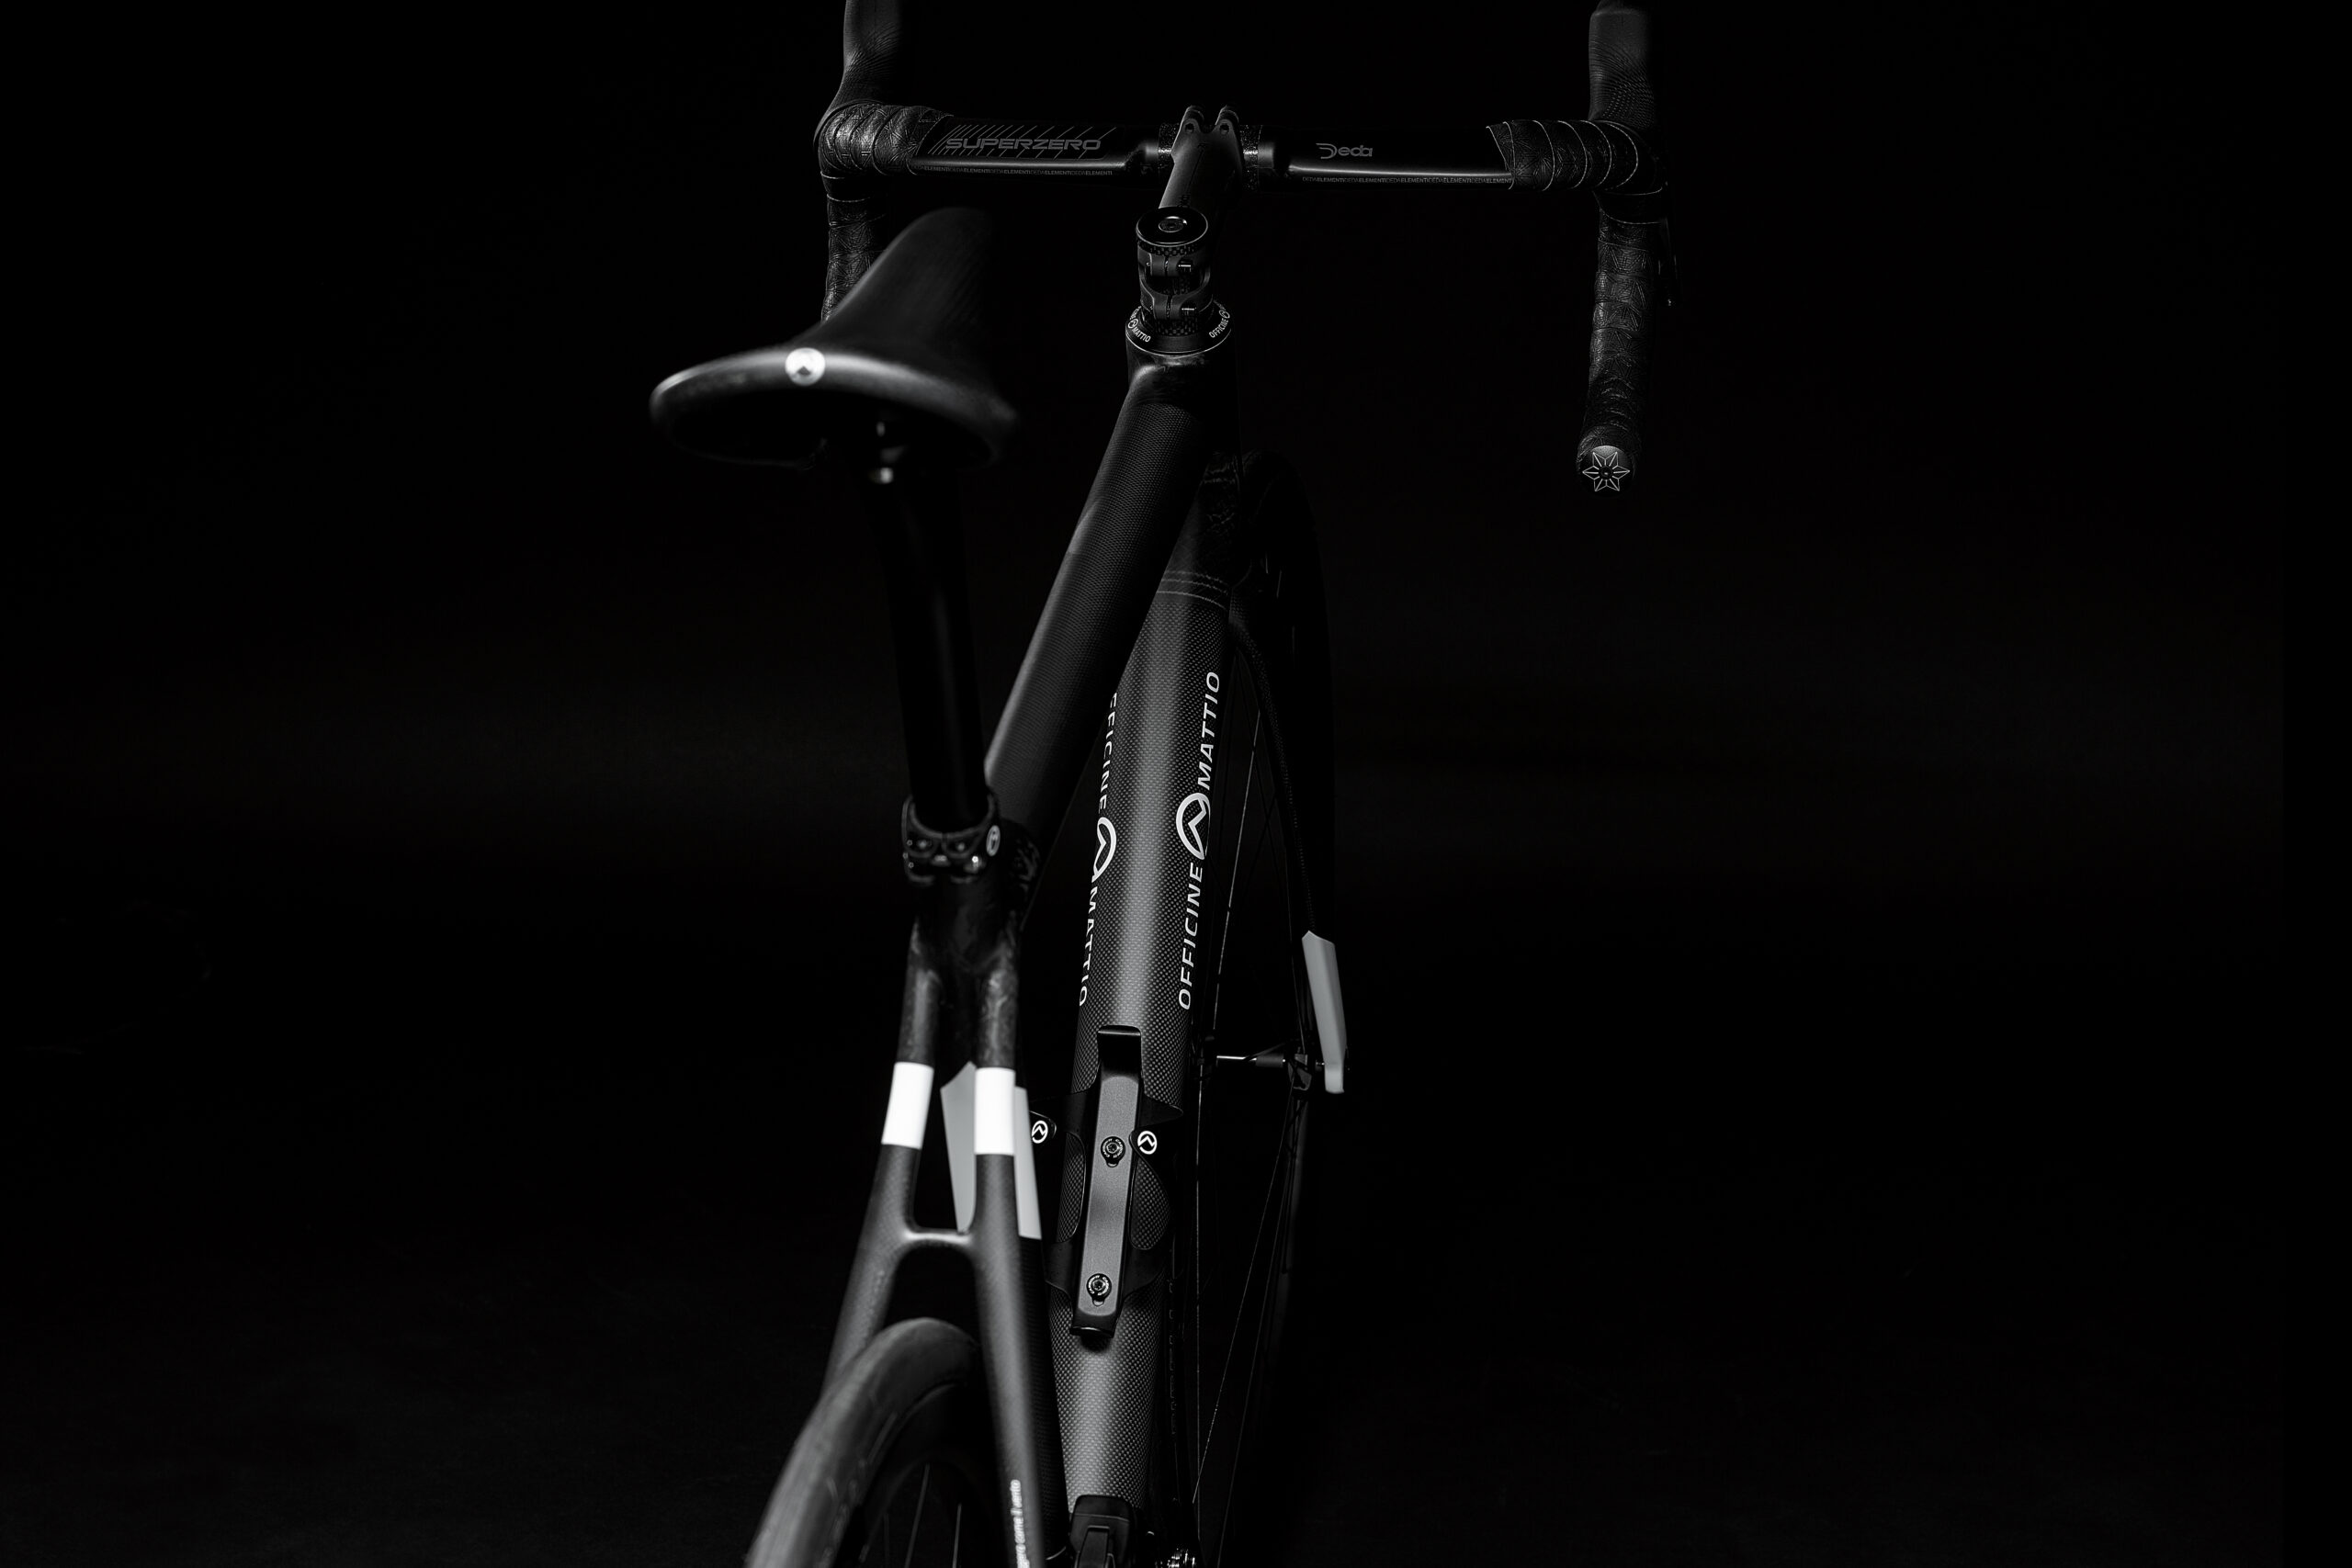 Bicicletta Officine Mattio modello SL DISC, produzione made in italy in fibra di carbonio, fotografia dettaglio sella